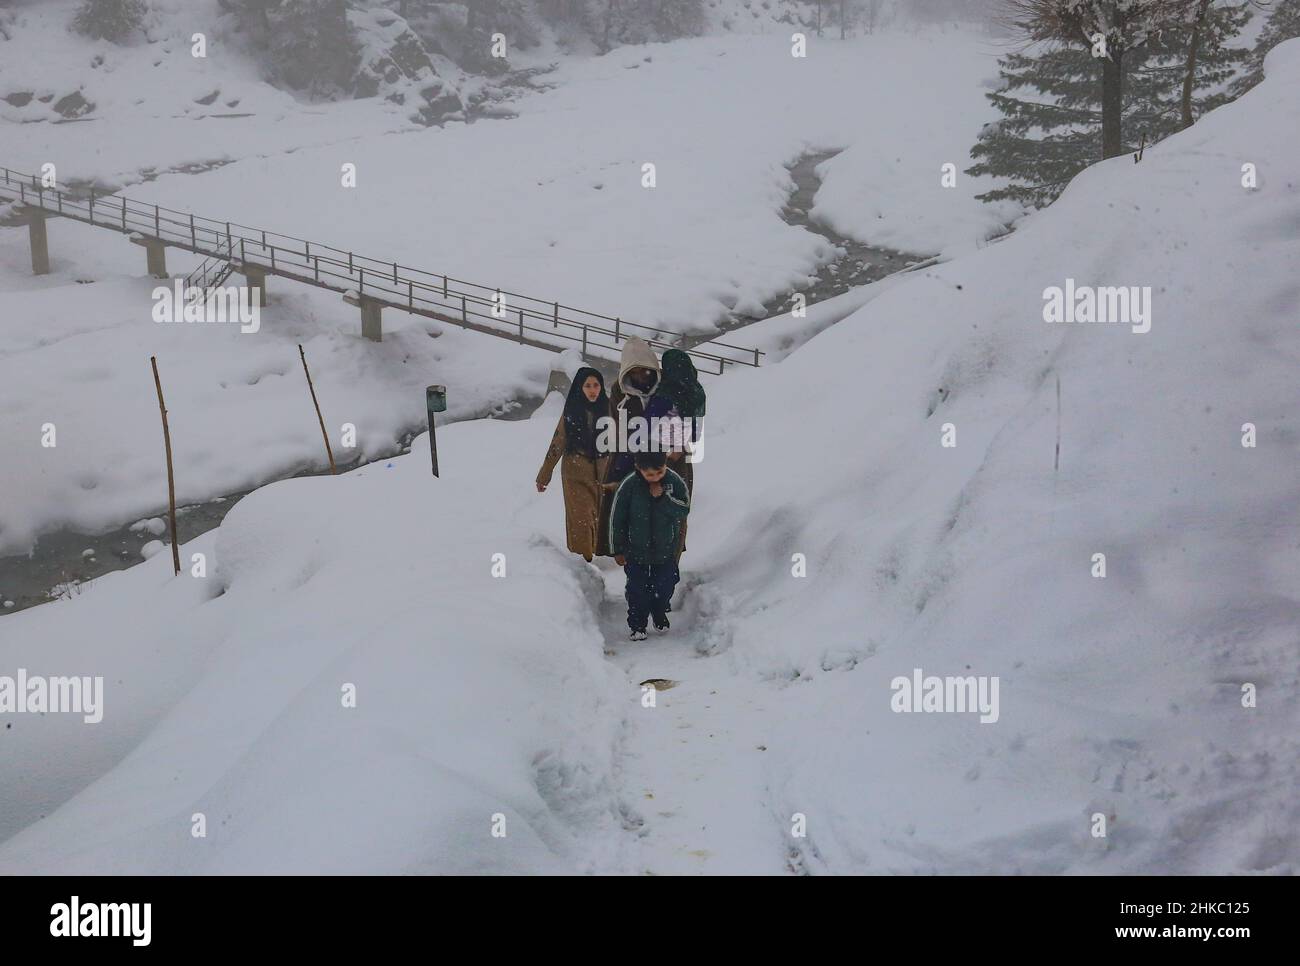 3 febbraio 2022, Srinagar, Jammu e Kashmir, India: La gente del Kashmiri cammina su una strada collinare coperta di neve in un villaggio nel distretto di Baramulla del Kashmir settentrionale, circa 35 chilometri a nord di Srinagar, la capitale estiva del Kashmir indiano. (Credit Image: © Sajad Hameed/Pacific Press via ZUMA Press Wire) Foto Stock